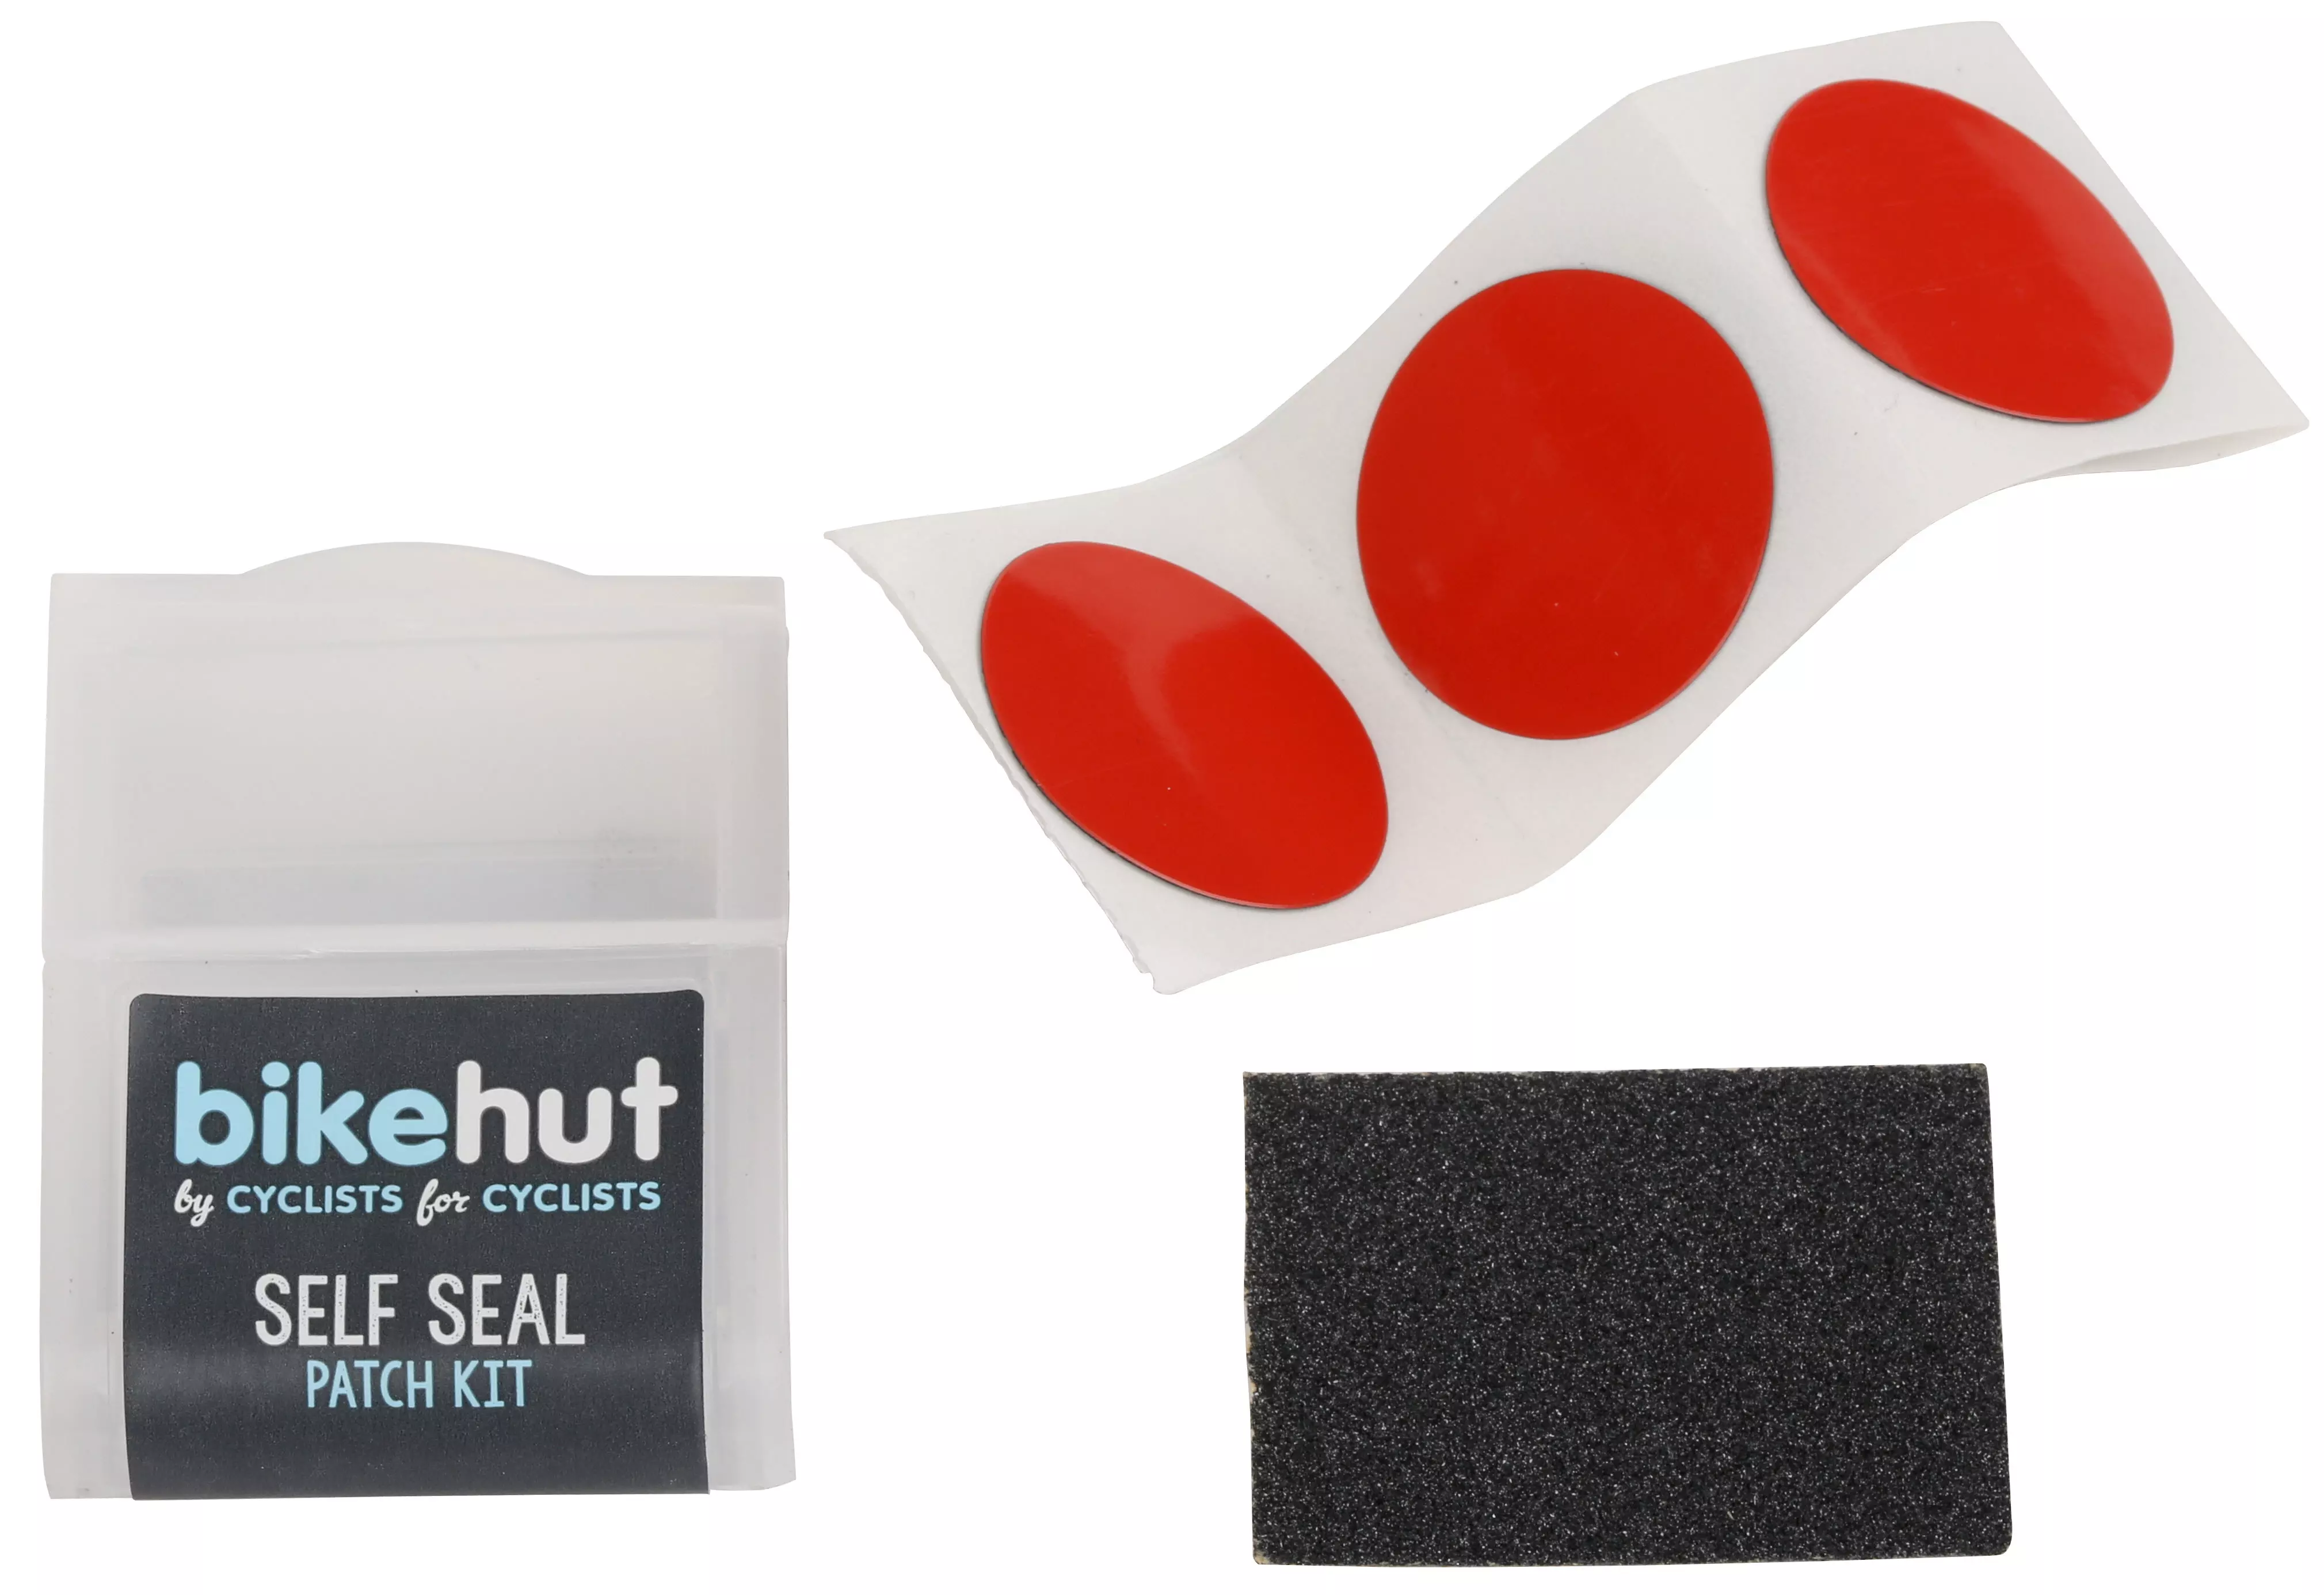 Bikehut Self Seal Patch Kit | Halfords UK